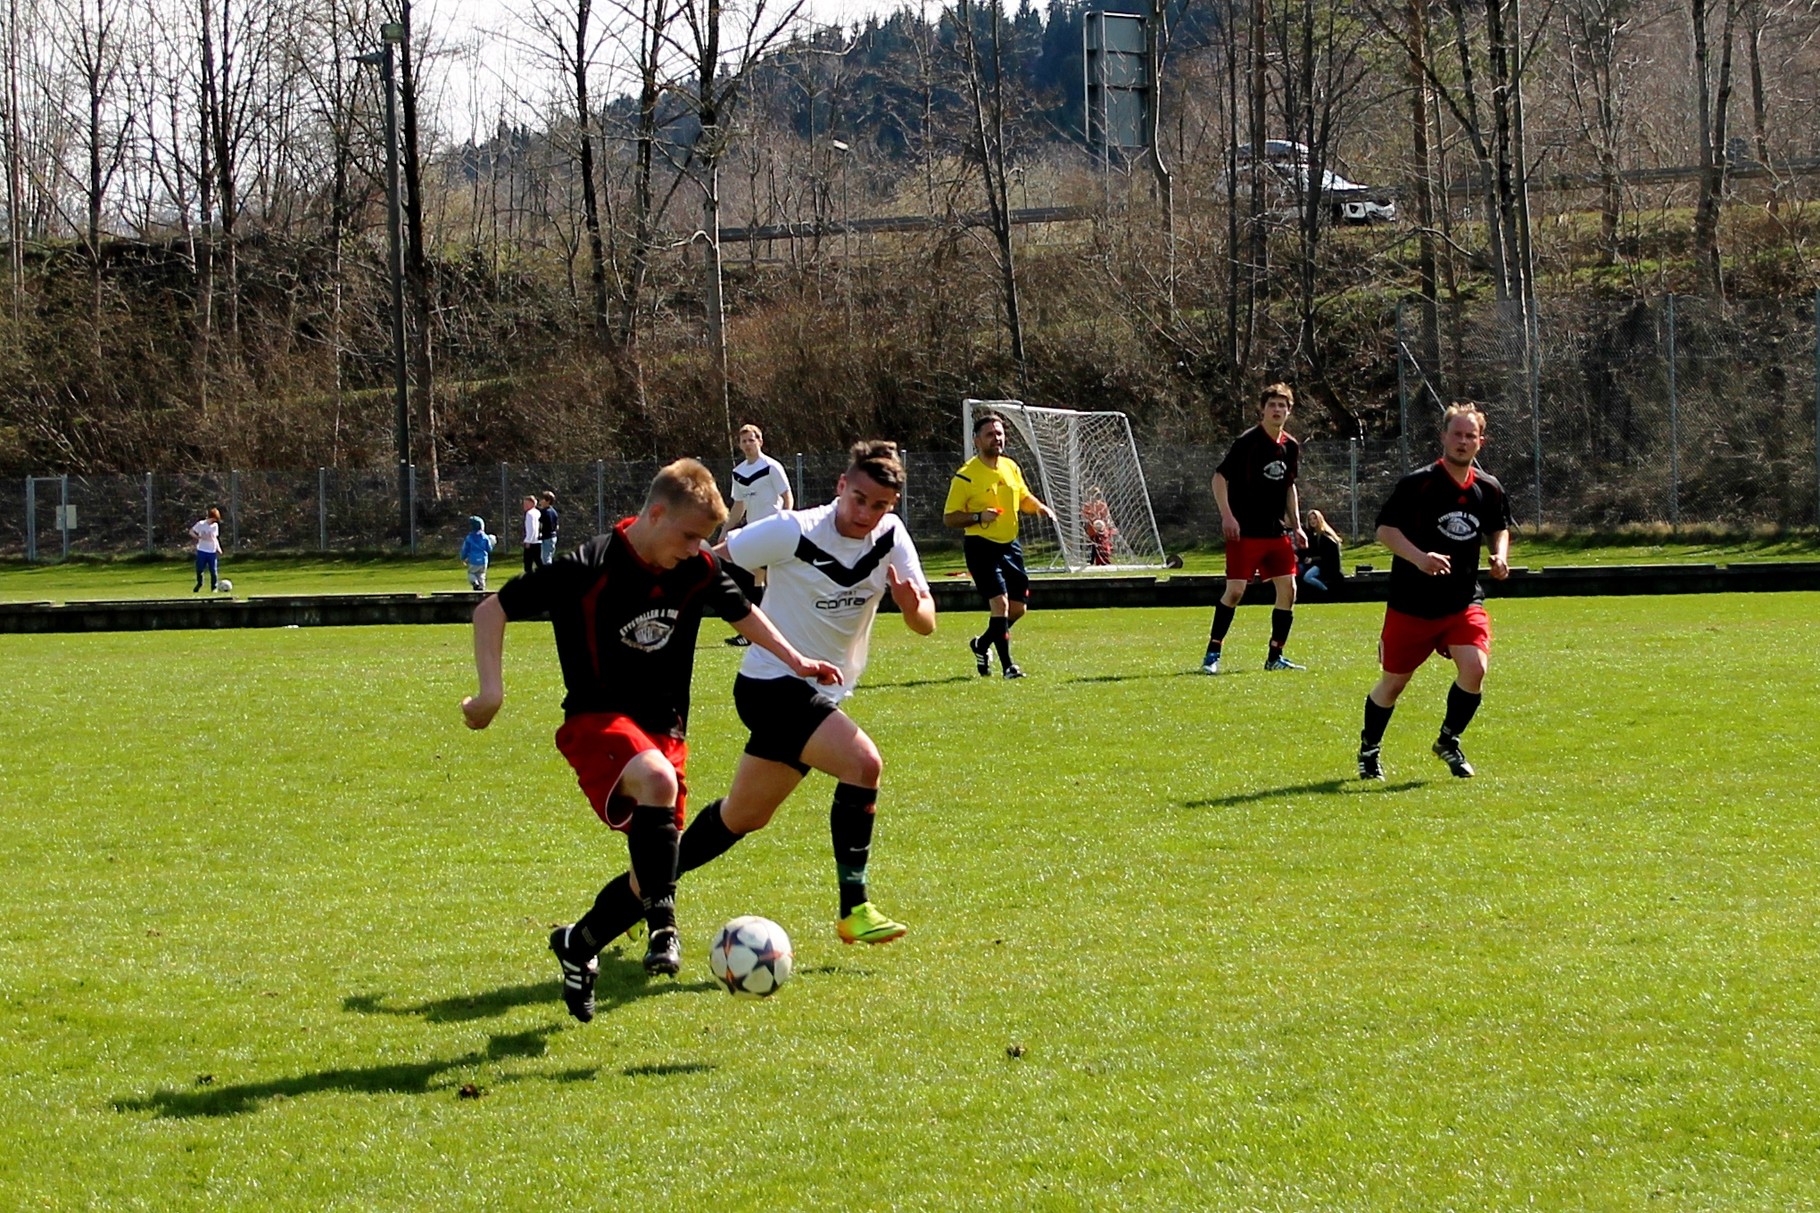 Gegen SC Rot Weiß Bad Tölz II (0:0) am 12.4.2015